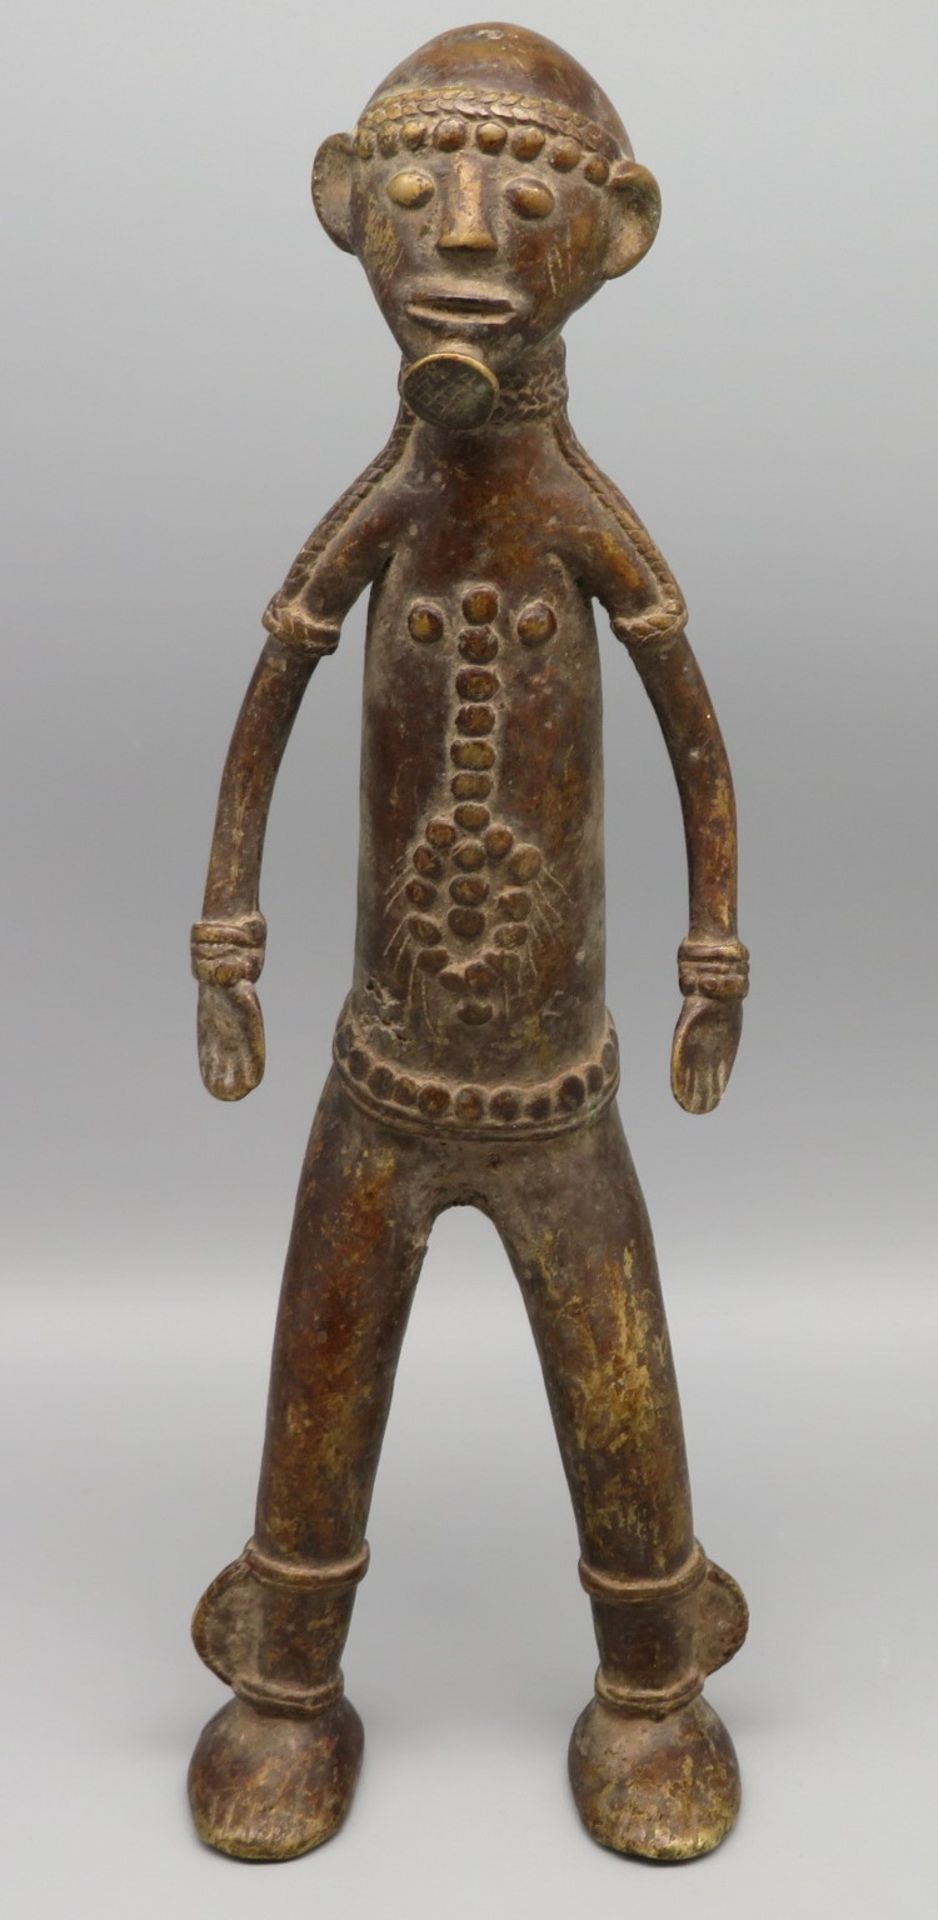 Männliche Ahnenfigur, Afrika, Nigeria, Vere, antik, Bronze, 32,5 x 11 x 7 cm.